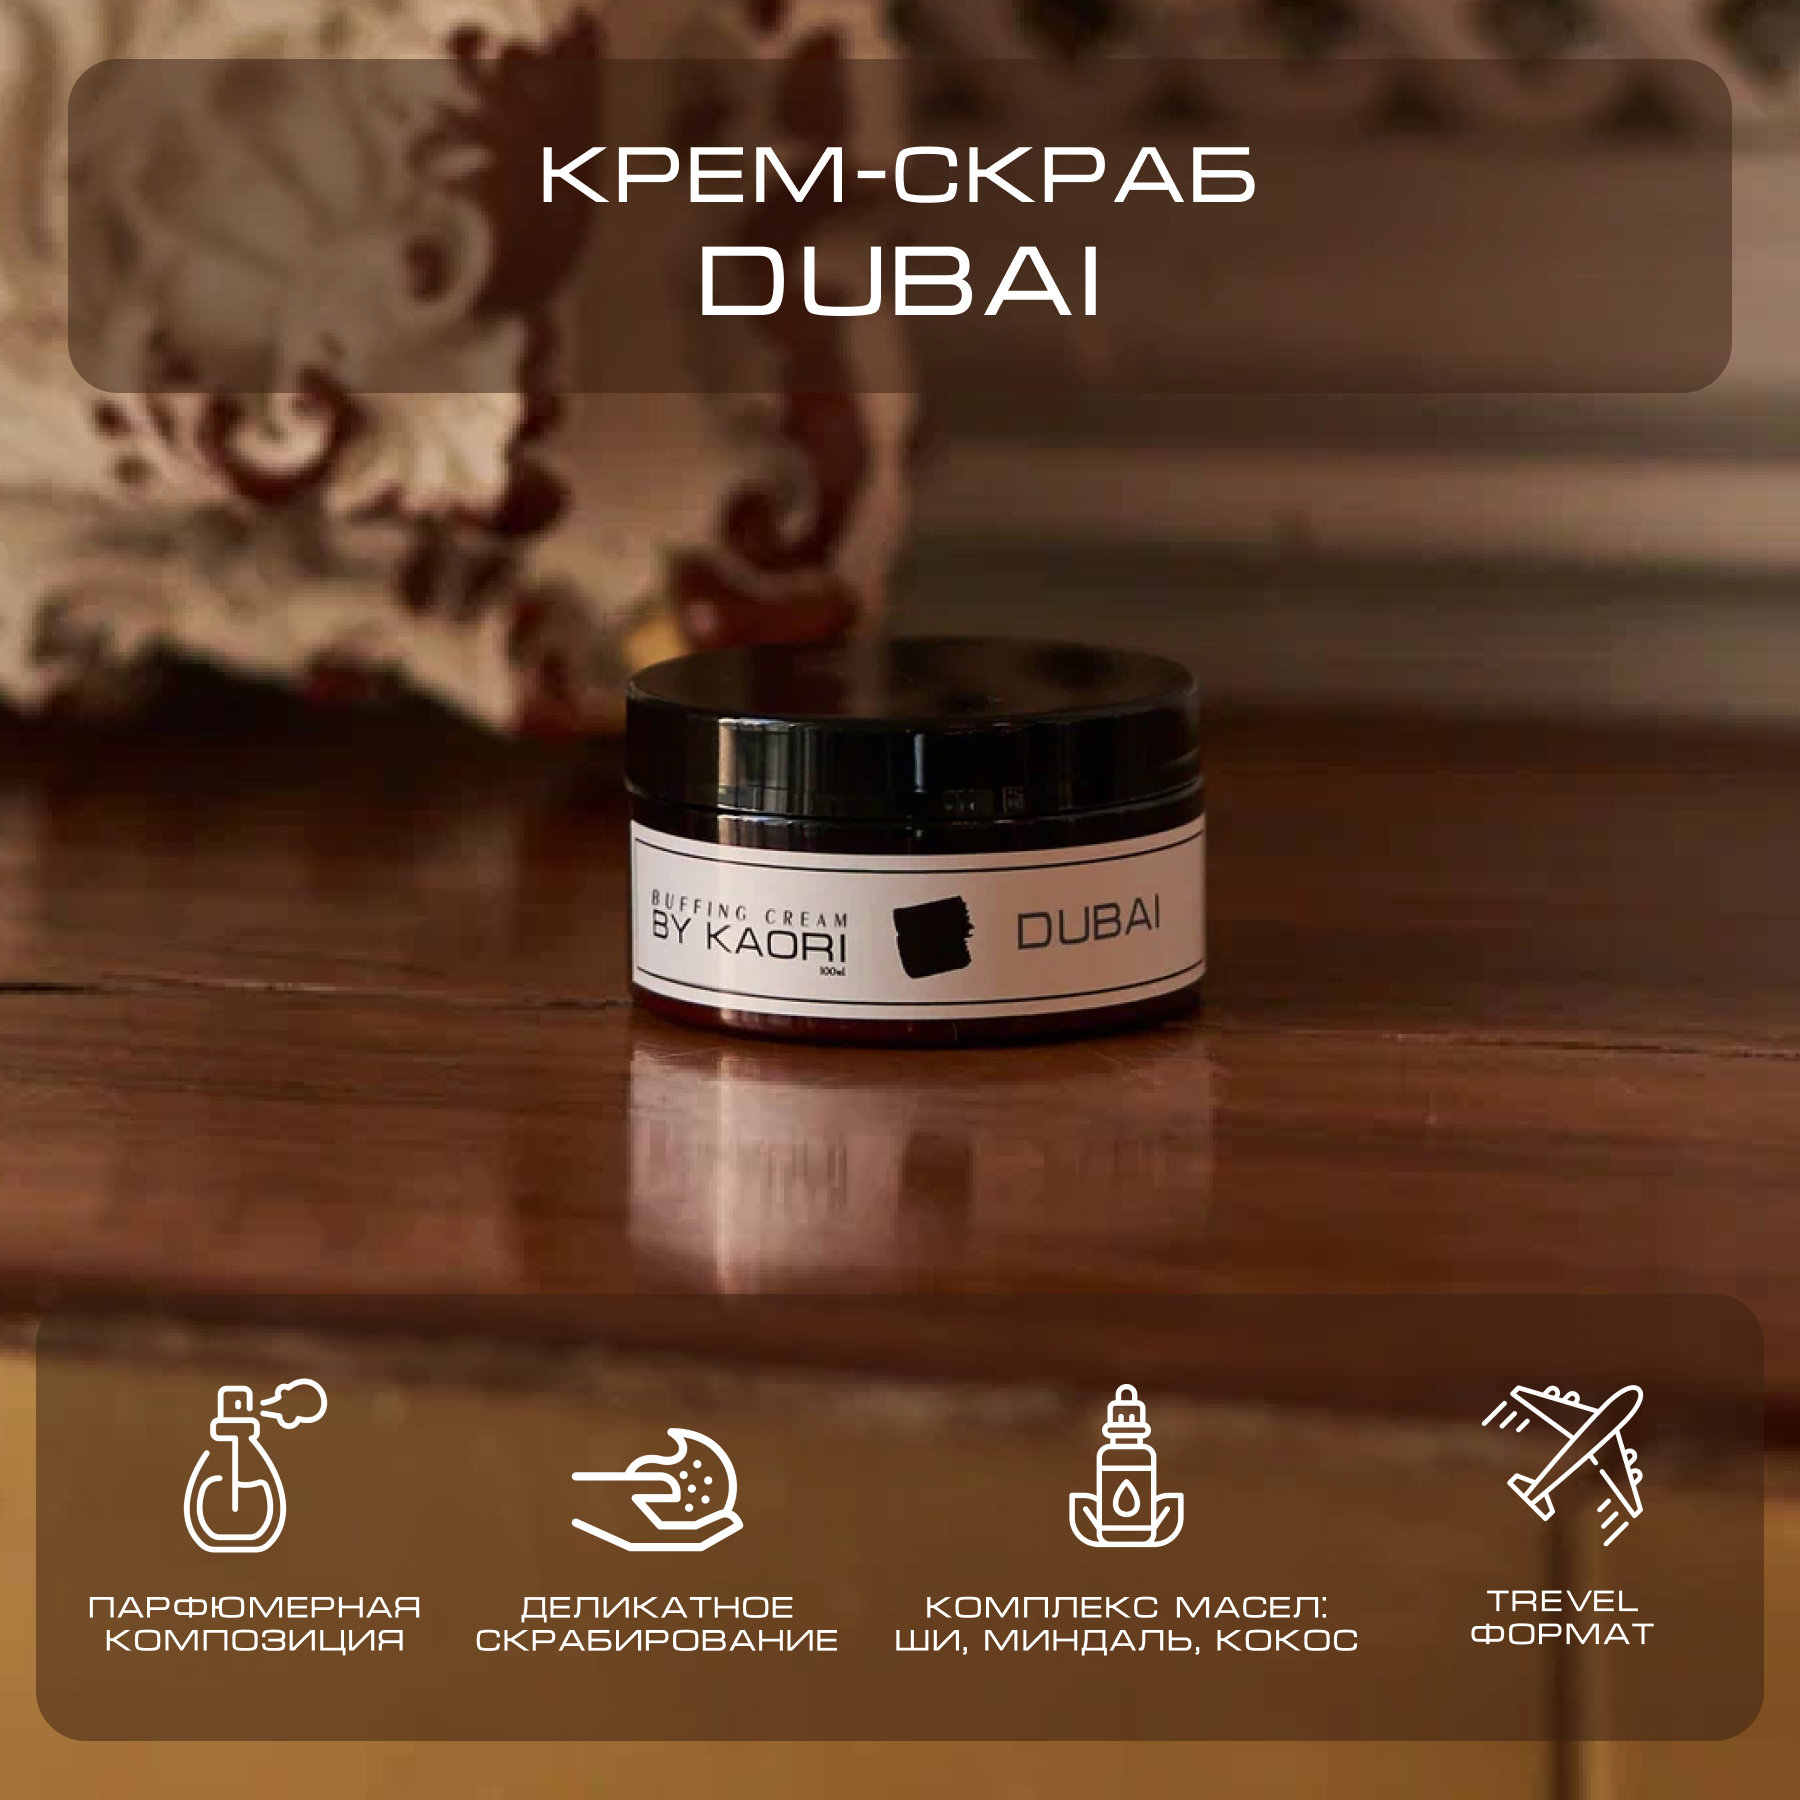 Крем скраб для тела By Kaori парфюмированный тревел-версия Dubai 100 г мальчик с пальчик мягк сказка за сказкой перро ш версия ск